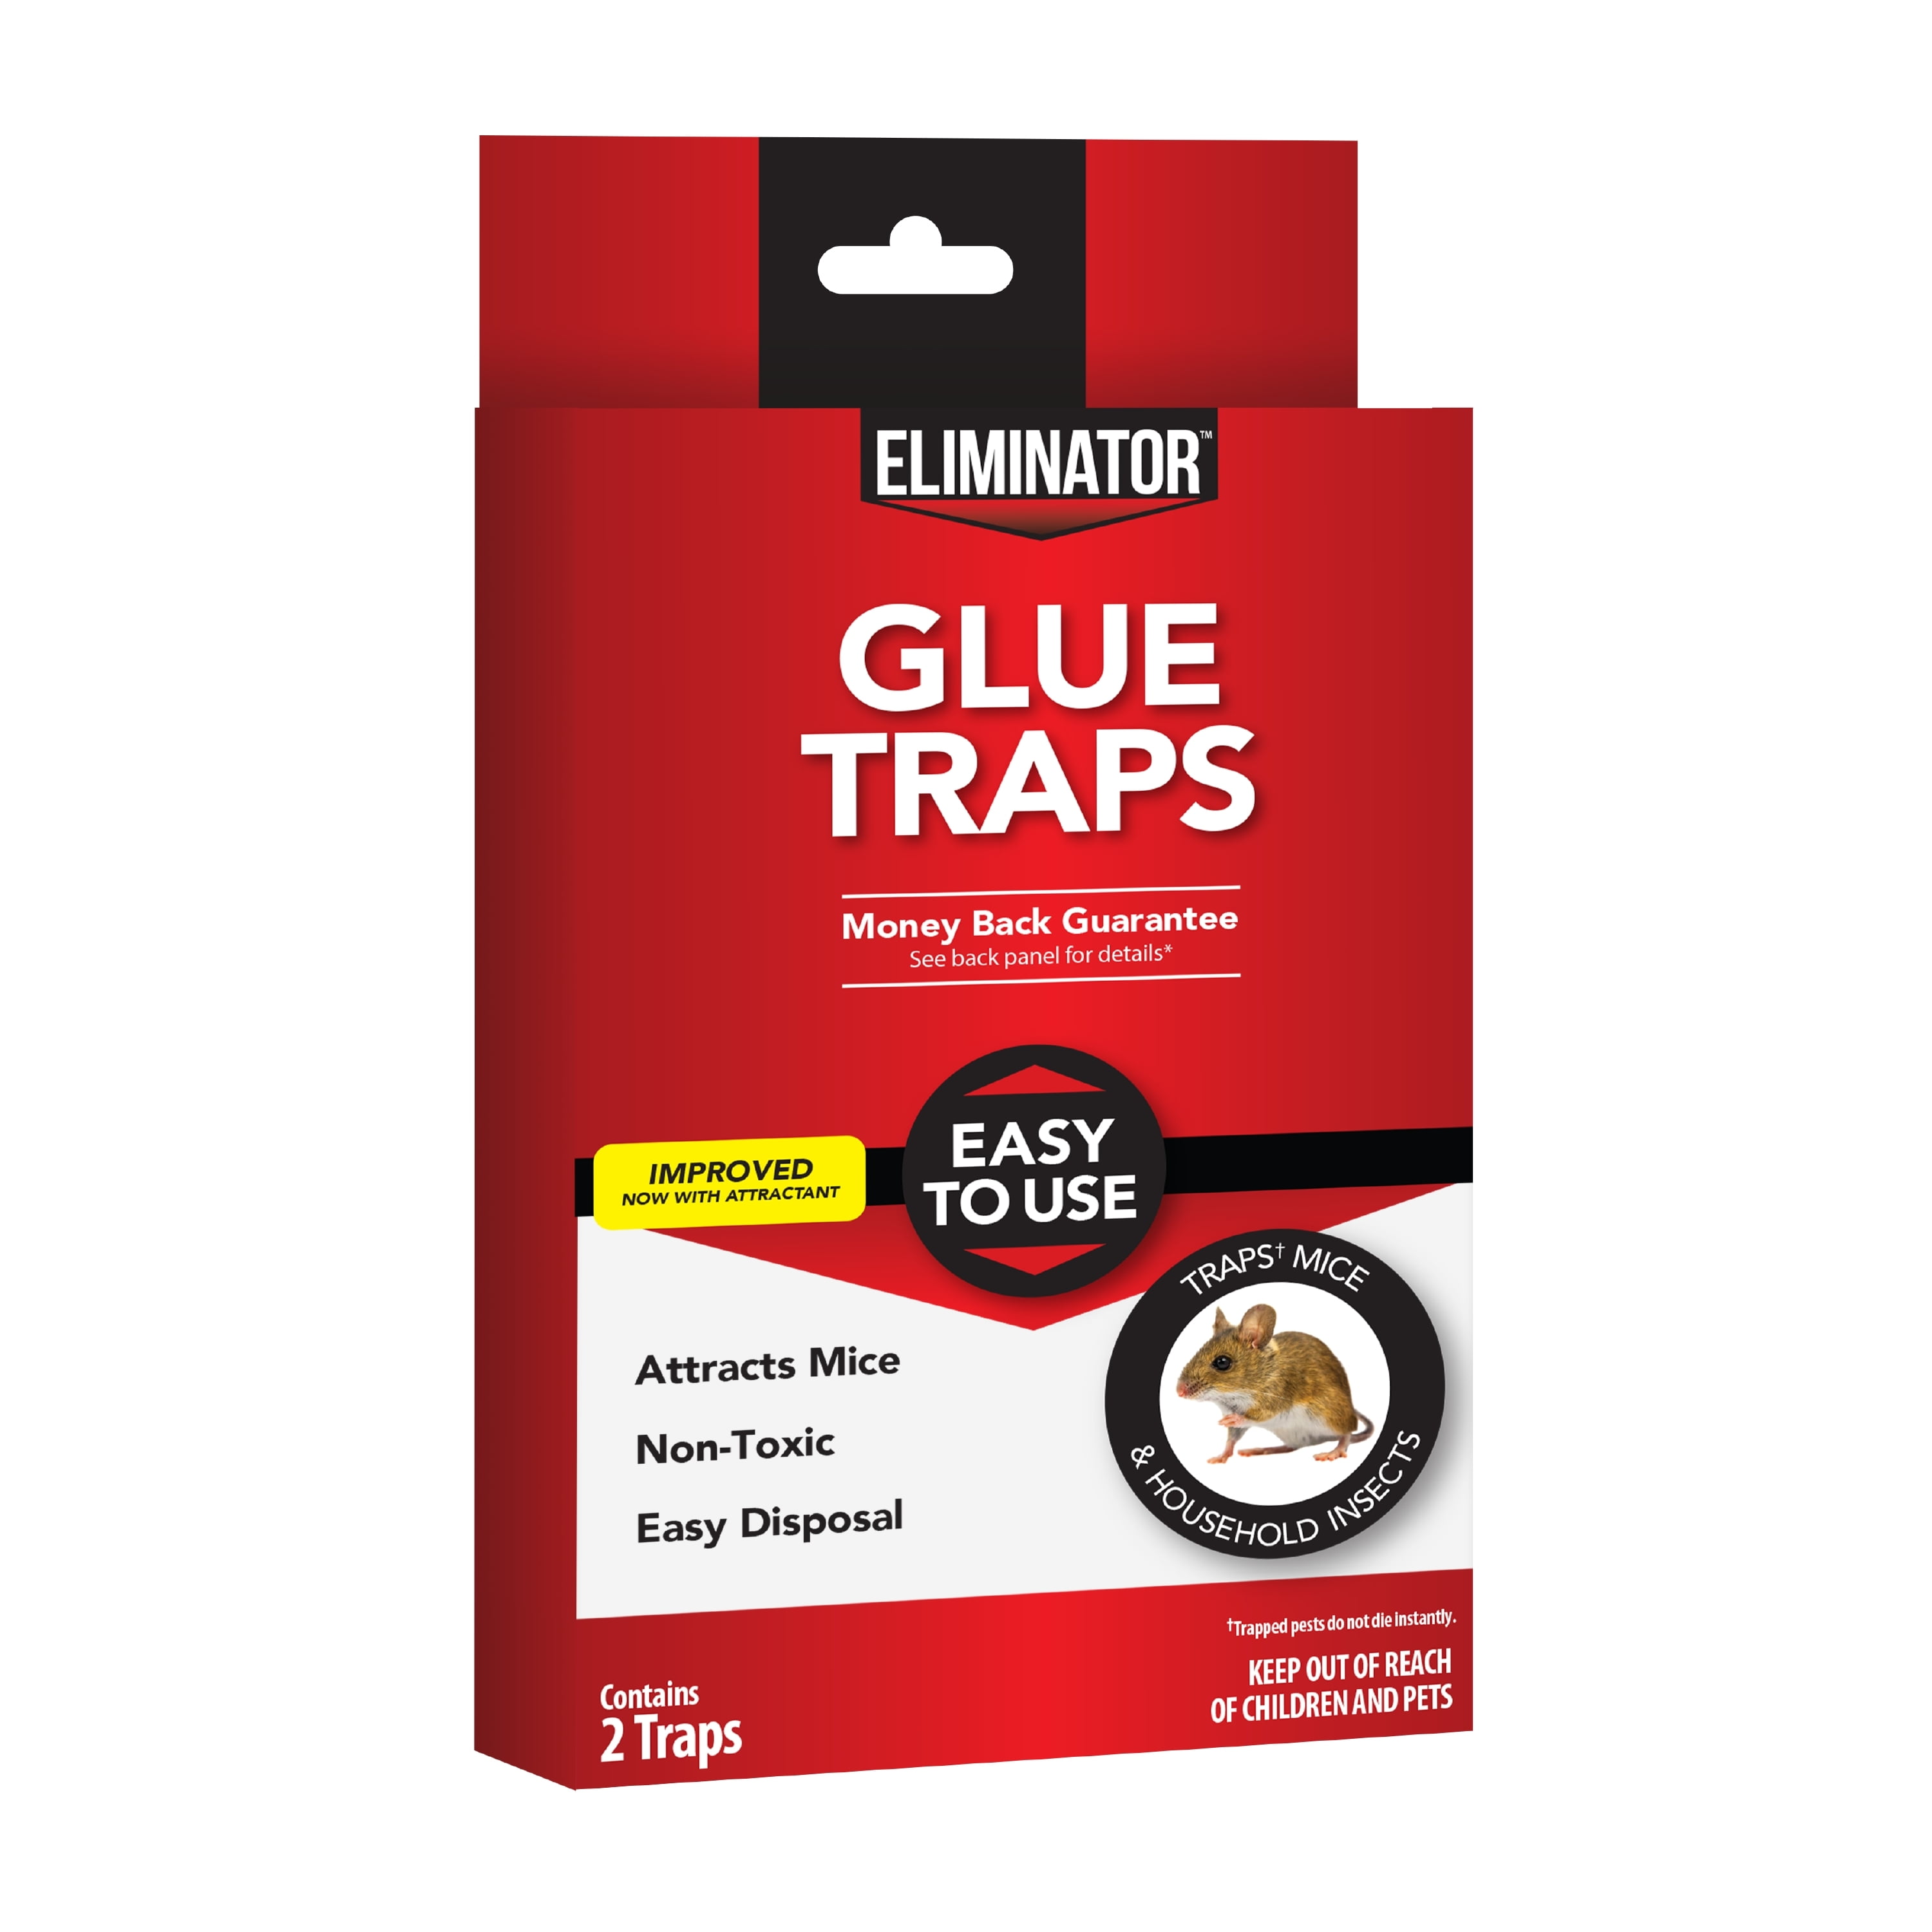 Mouse Guard Disposable Glue Traps, 6 Ct.